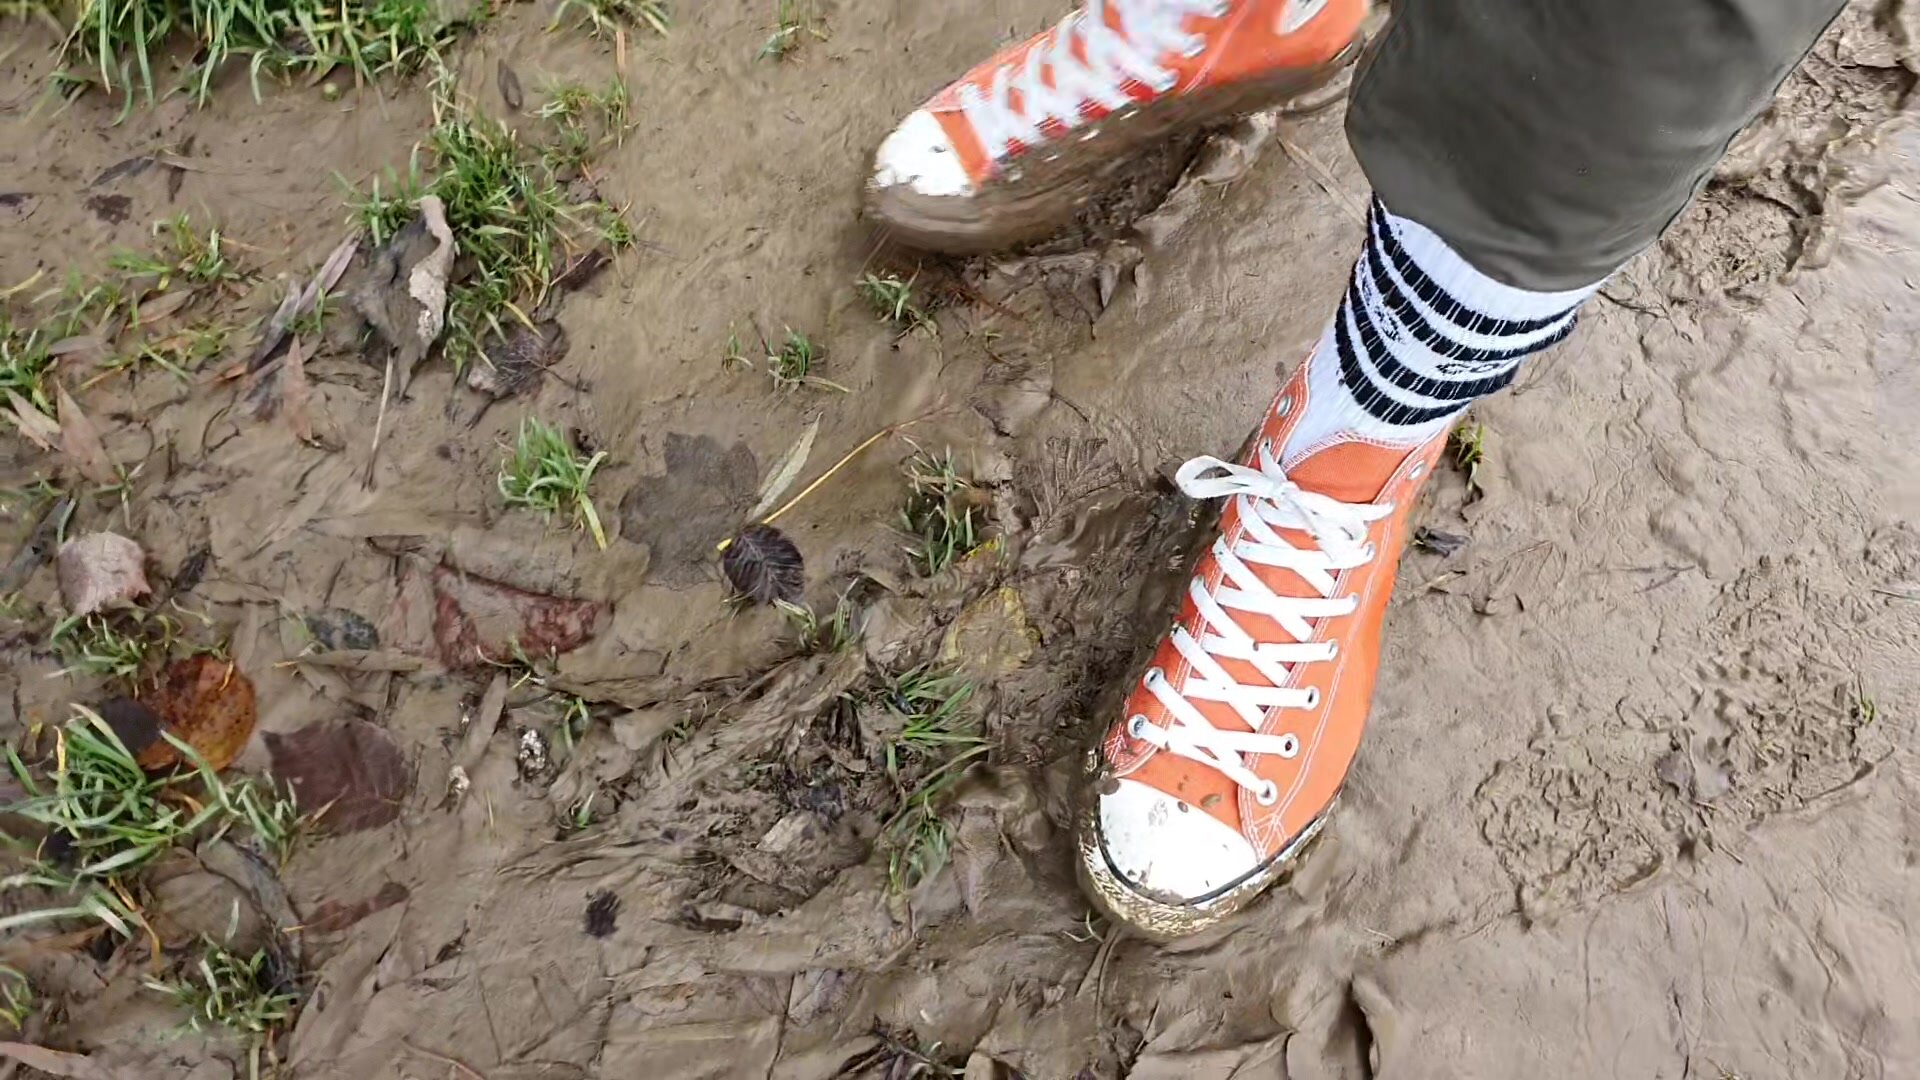 Fun with my sand-orange Chucks (mud, wet), part 2